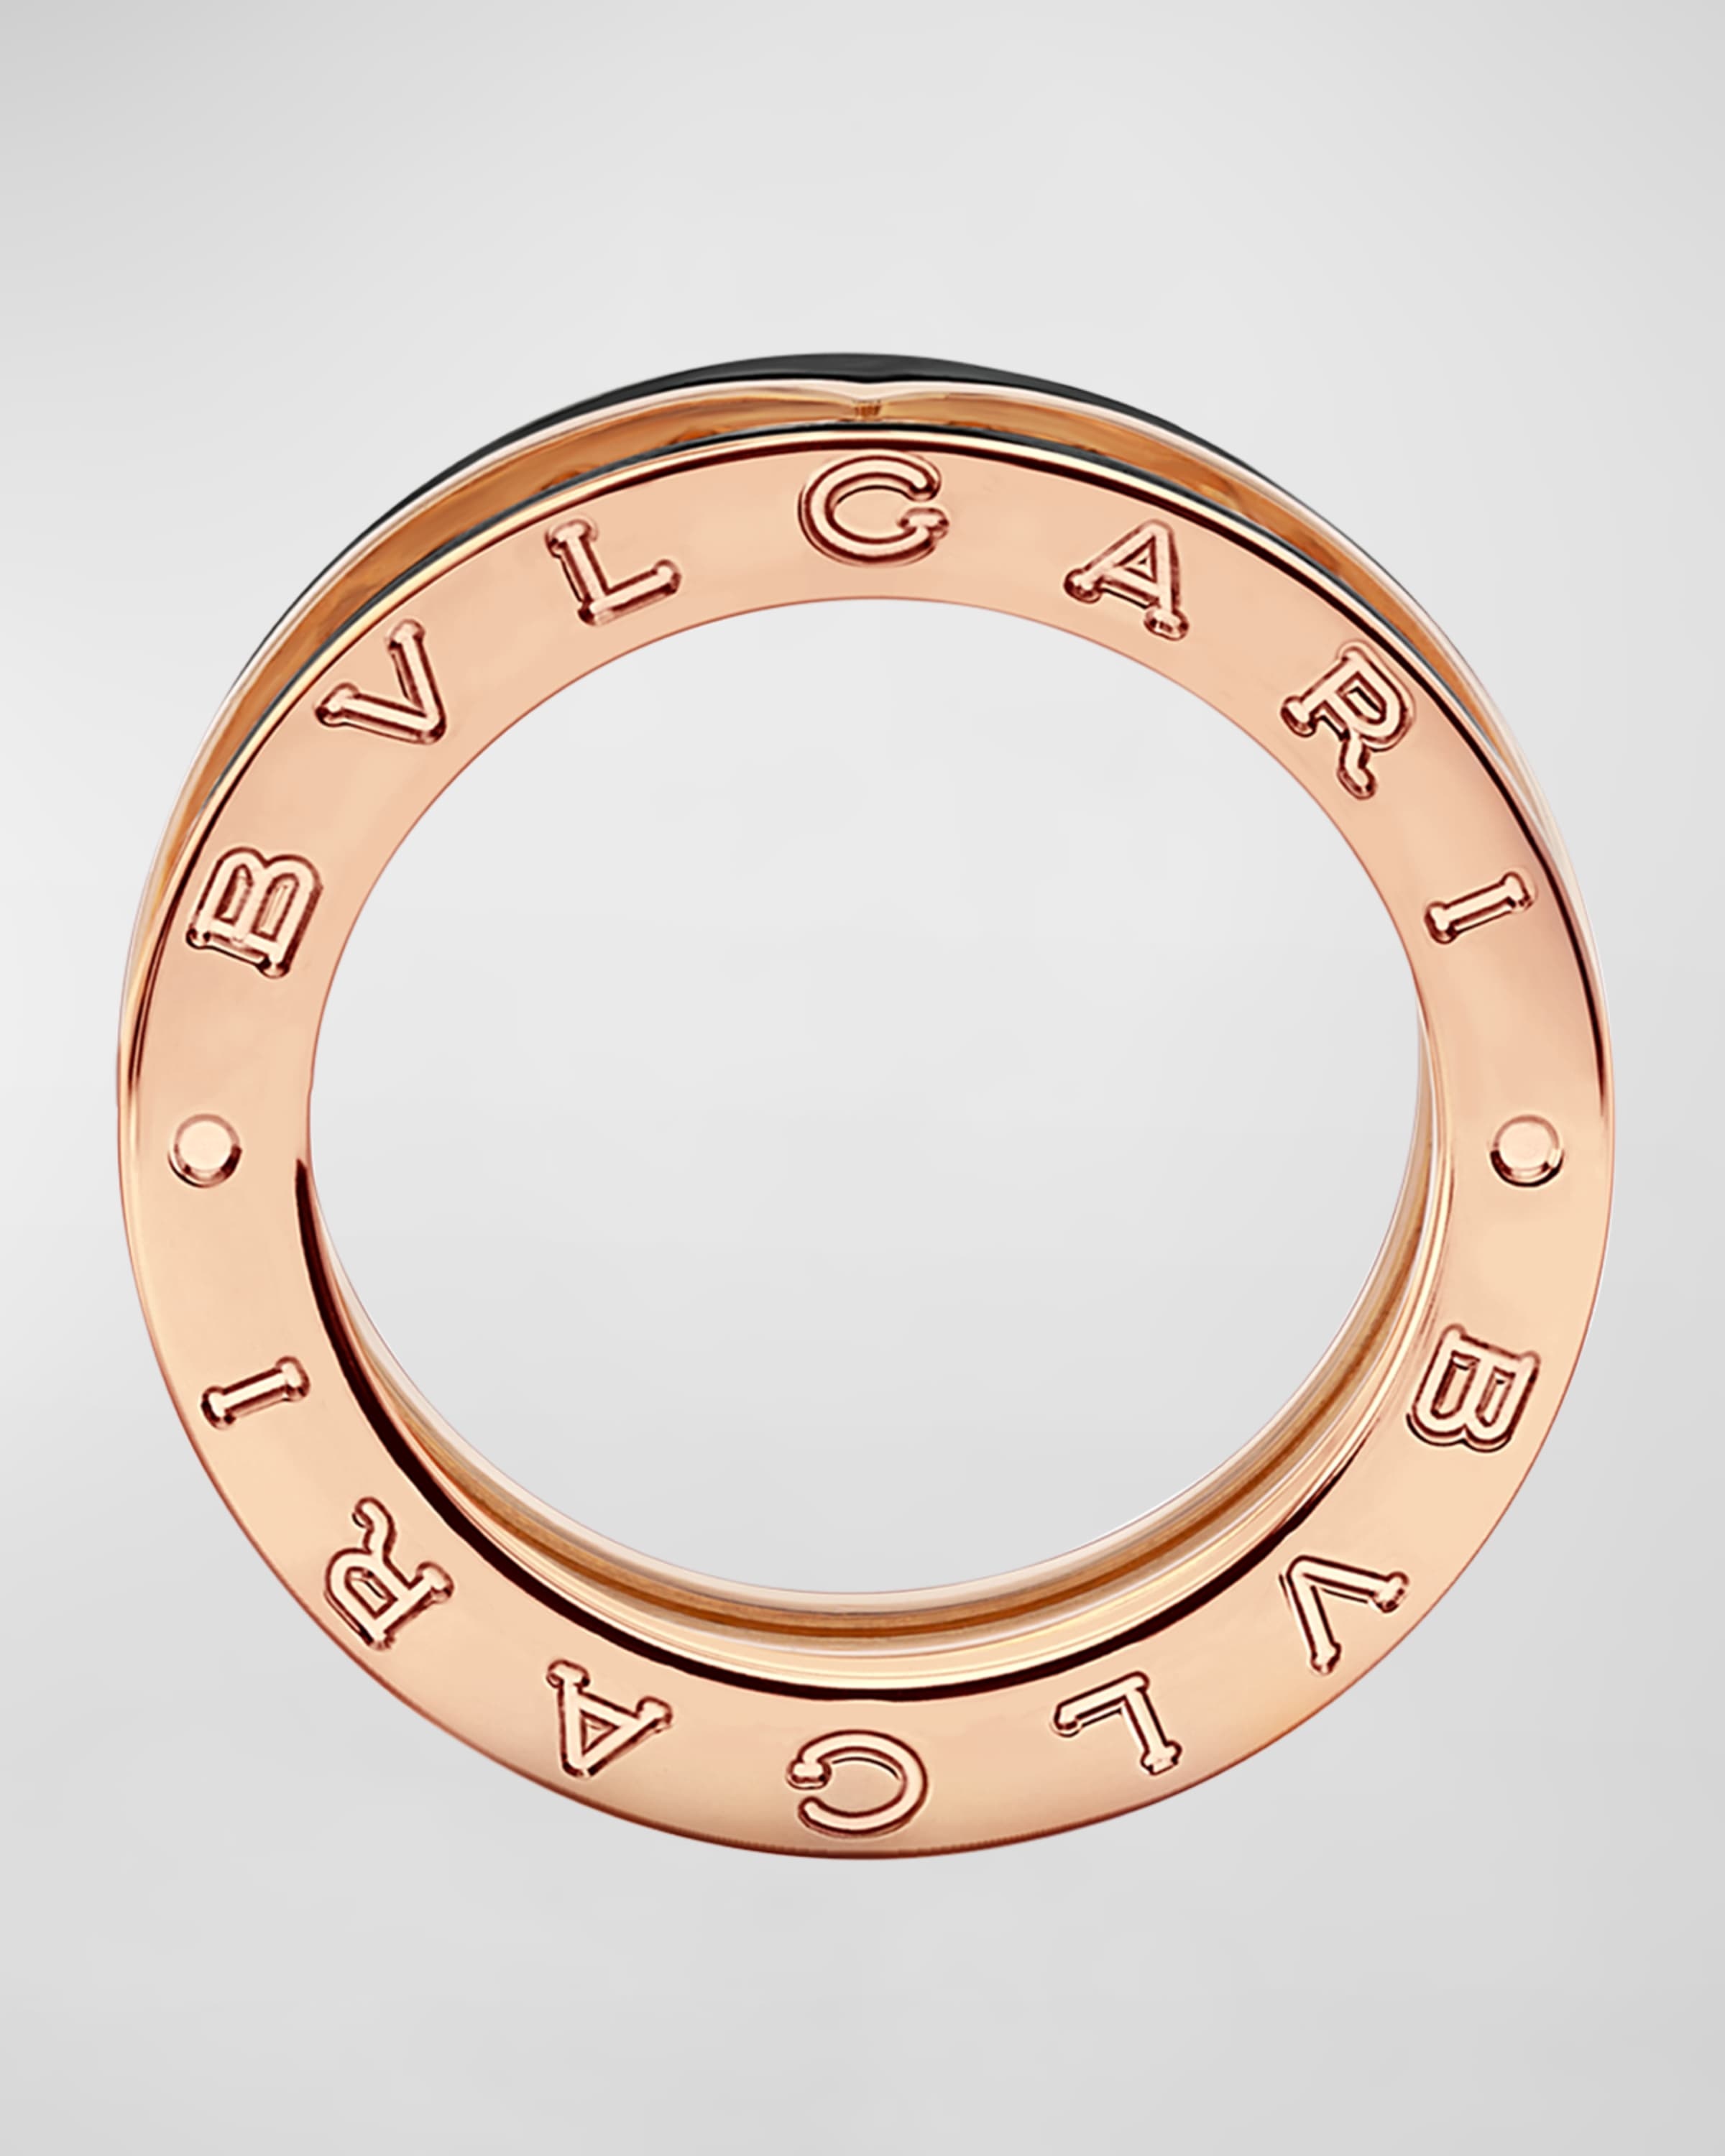 B.Zero1 Rose Gold Ring with Black Ceramic Edge, EU 52 / US 6 - 3